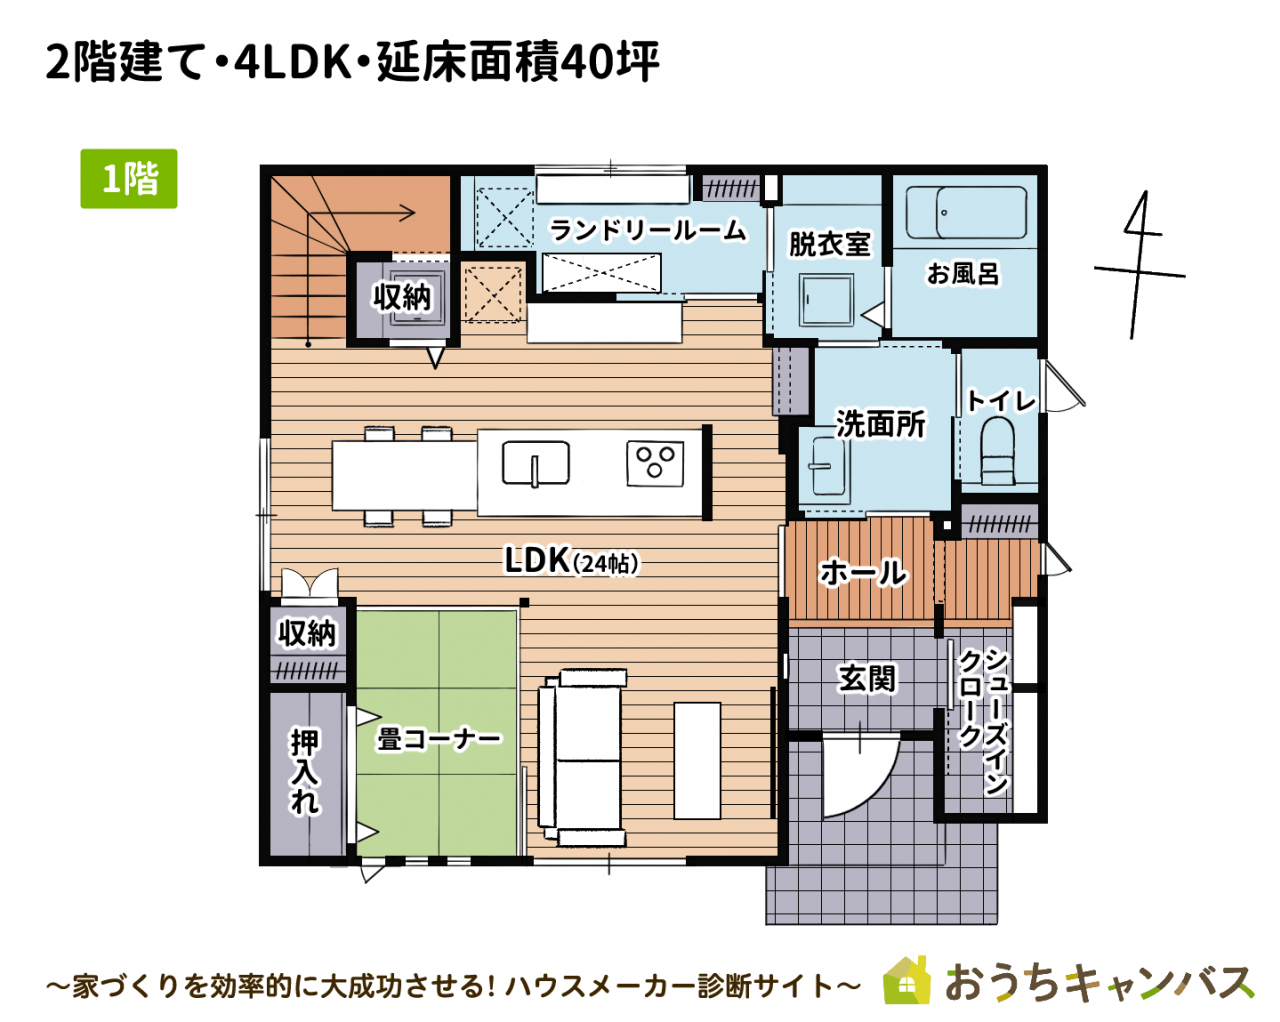 2階建て・4LDK・延べ床面積40坪の家1階